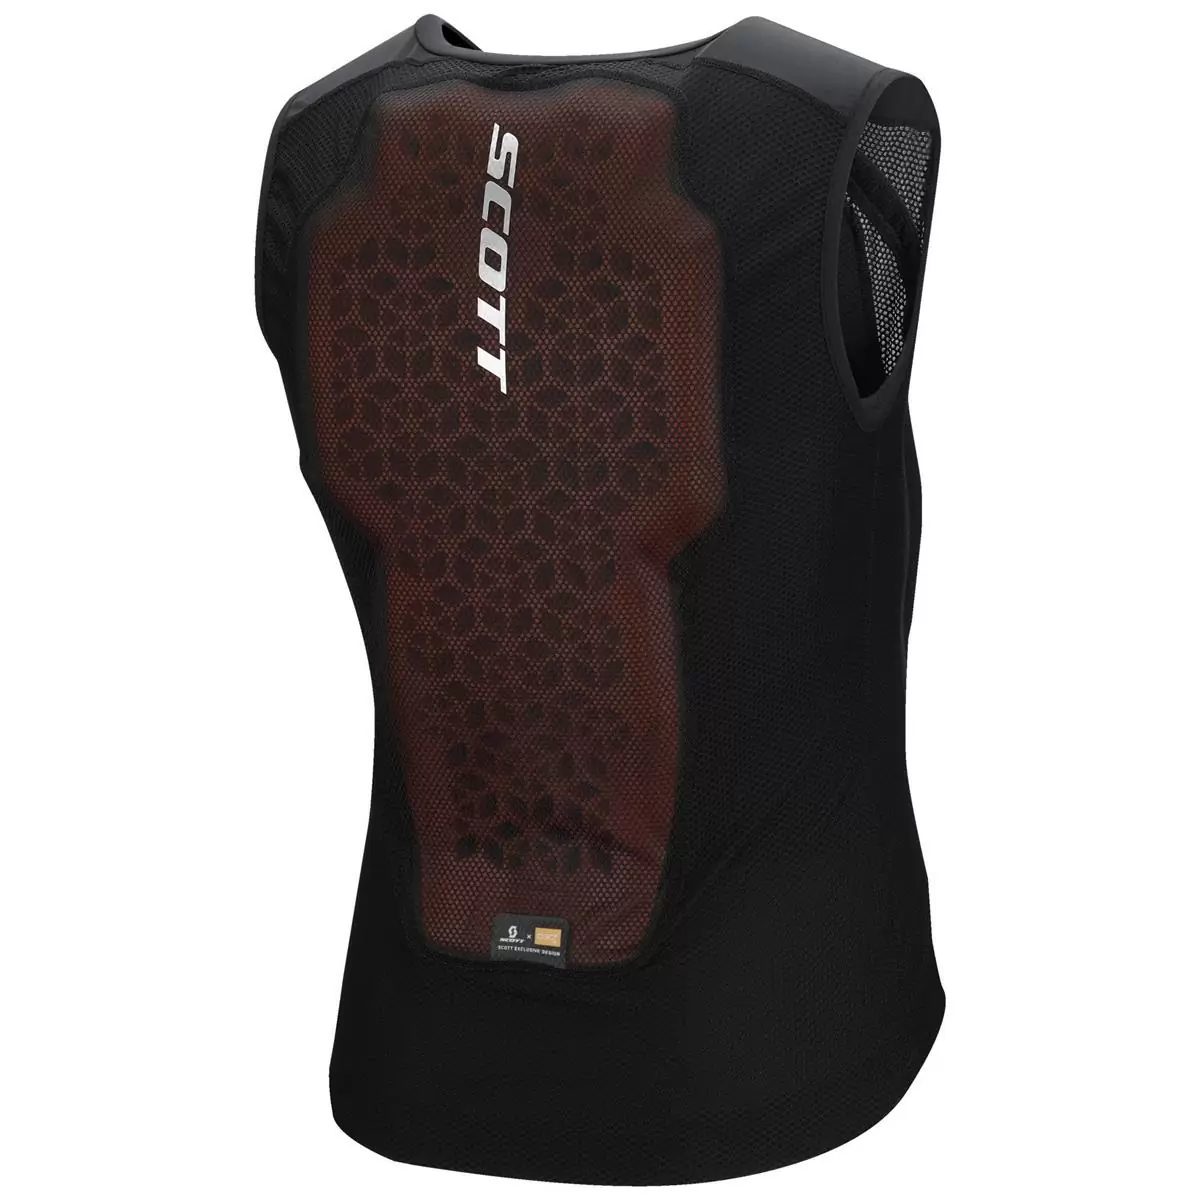 Vest Protector Softcon Hybrid Pro Protective Vest Black Size L #1